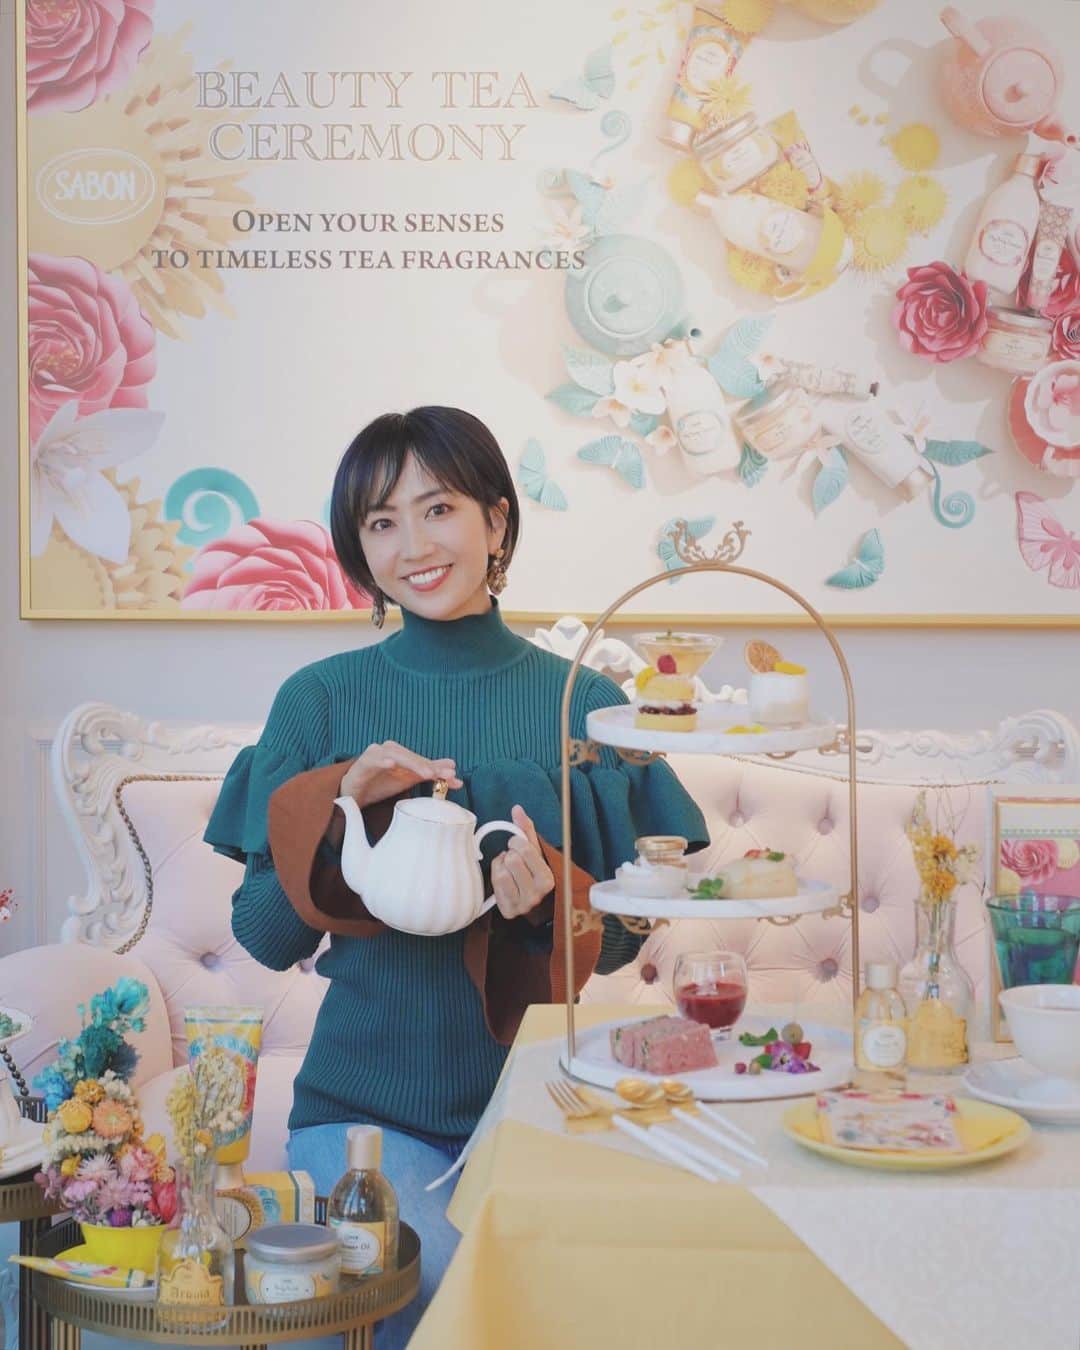 渡辺由布子のインスタグラム：「🫖🌼💐💛  -Afternoon Tea Memories vol.10☕︎-   日本上陸15周年を迎えるSABONからVEGAN AFTERNOON TEA CAFÉが期間限定オープン！   「ティーセレモニー コレクション」の発売を記念し、中目黒のフラッグシップストア「SABON l’Atelier SPA」では、定番のホワイトティー、ローズティーに加えて、限定のミモザティーの3種の香りをイメージしたオリジナルオーガニックティーとともに、肌と心を喜びで満たす* 100%VEGAN(!!!)のスイーツとセイボリーを楽しめます。 豆乳をベースにしたクロテッドクリームや、ベリーブレッドのヴィーガンサンドイッチなど、VEGANの新世界を体感できました。  お土産にはミニサイズのSABONシャワーオイルも🧴  フレッシュな香りと澄んだフレーバーで五感を研ぎ澄まし、心華やぐティータイムを♡  期間：2023年1月12日（木）～2023年2月22日（水） 場所：SABON l’Atelier SPA（サボン アトリエ スパ）店内 金額：1名様　6,050円（税込） 内容： ・3種のオリジナルオーガニックティー  ①ミモザティー②ホワイトティー③ローズティー ・3プレートのヴィーガンアフタヌーンティーセット ・SABON シャワーオイル ミモザティー 100mL *原料に動物性素材を使用しない 🥪 @universalbakes_nicome @alaska_zwei   #SABON #vegan #ヴィーガン #ヌン活 #PR #中目黒カフェ #アフタヌーンティー #アフタヌーンティー巡り #アフタヌーンティー好きな人と繋がりたい #アフティー #スイーツ巡り #アフタヌーンティー部 #スイーツ部 #ヌン活好きな人と繋がりたい #afternoontea #vegancafe #teaceremony #AT #ノンアルコール #お酒あればなおよし  🏷 SABON l’Atelier SPA 📍 @sabon_japan (#sabonlatelierspa ) 🗾 #Nakameguro (#中目黒 ) #TOKYO (#東京 ) 🌎 #🇯🇵 (#JAPAN #日本 )」